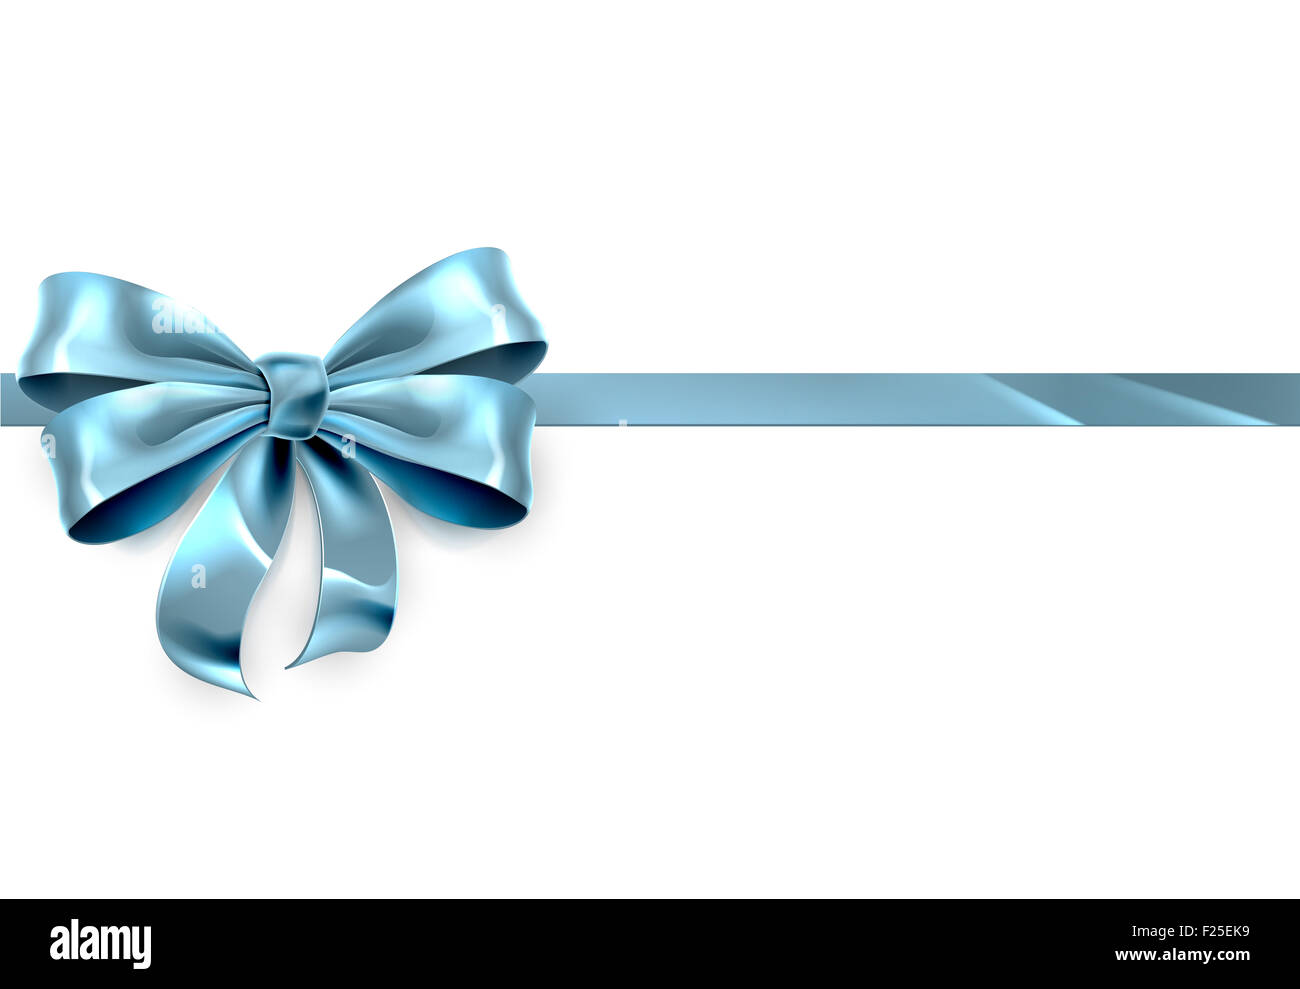 Un bel blu ribbon e archetto da un Natale, compleanno o altro dono Foto Stock